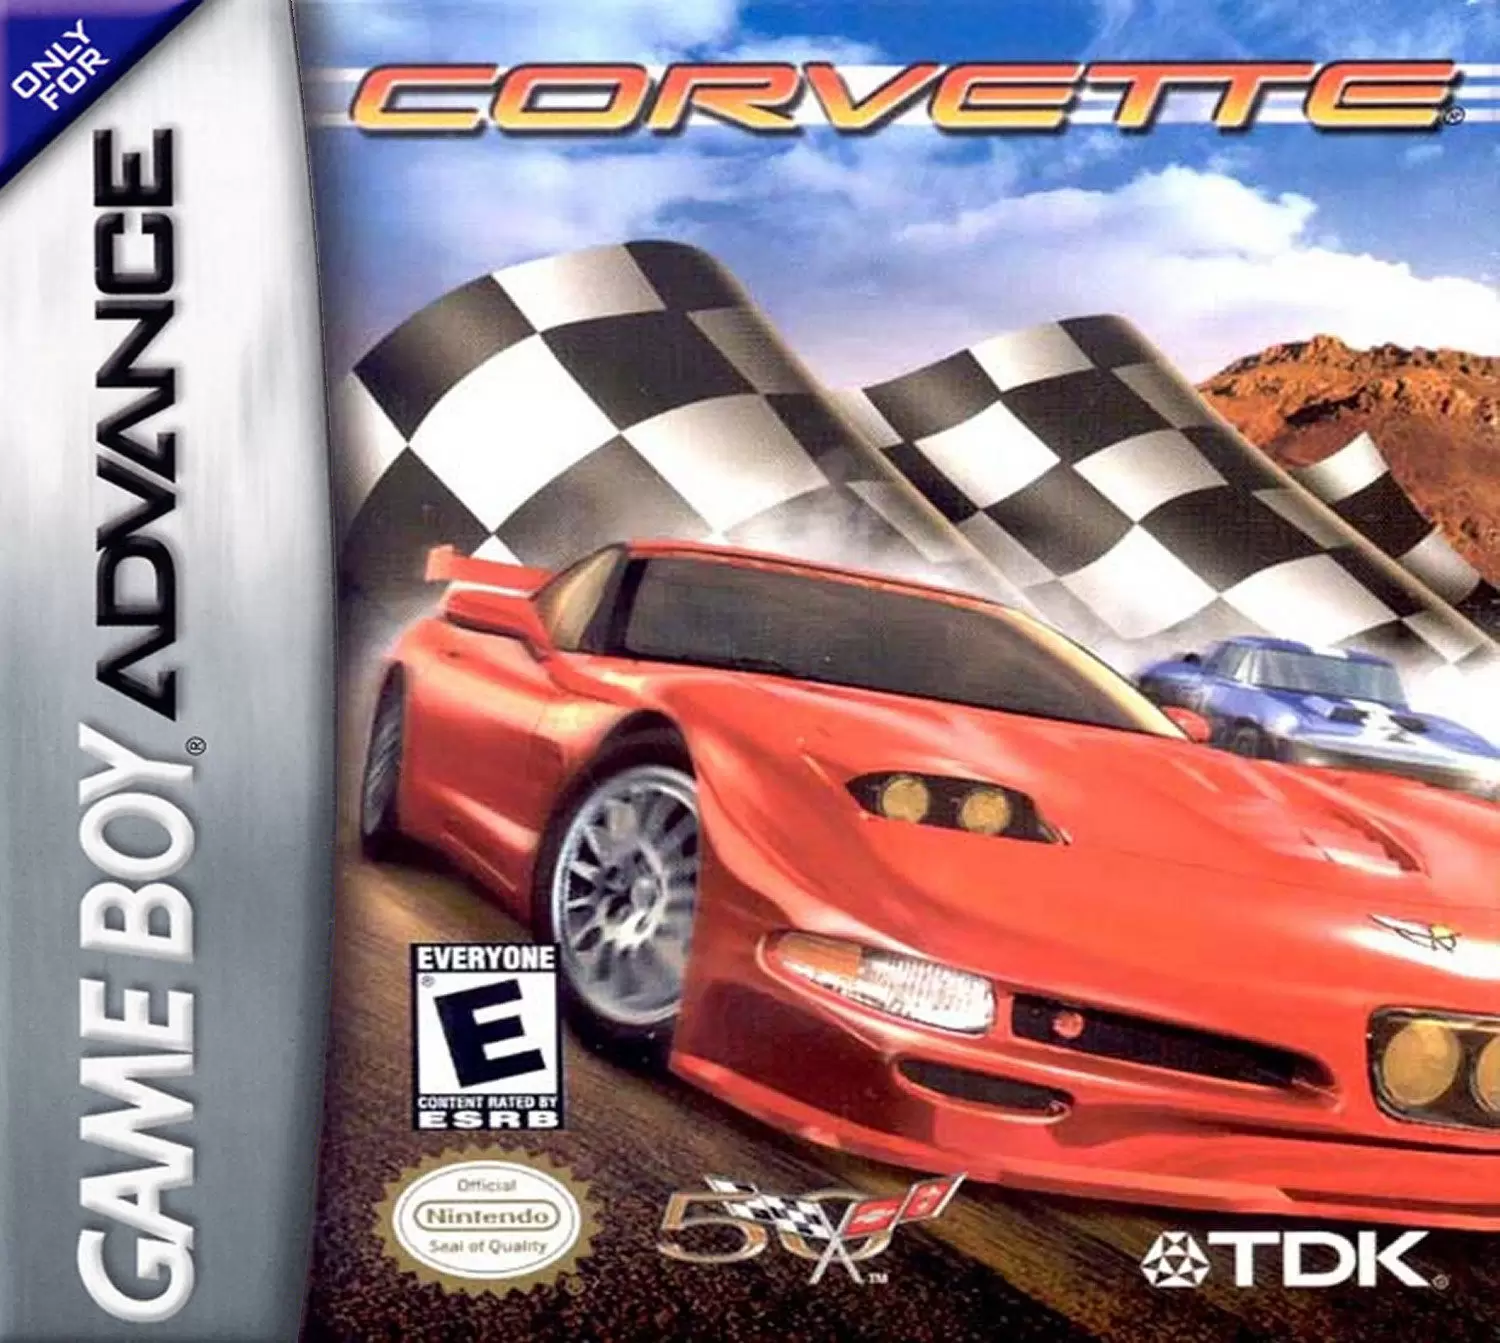 Game Boy Advance Games - Corvette